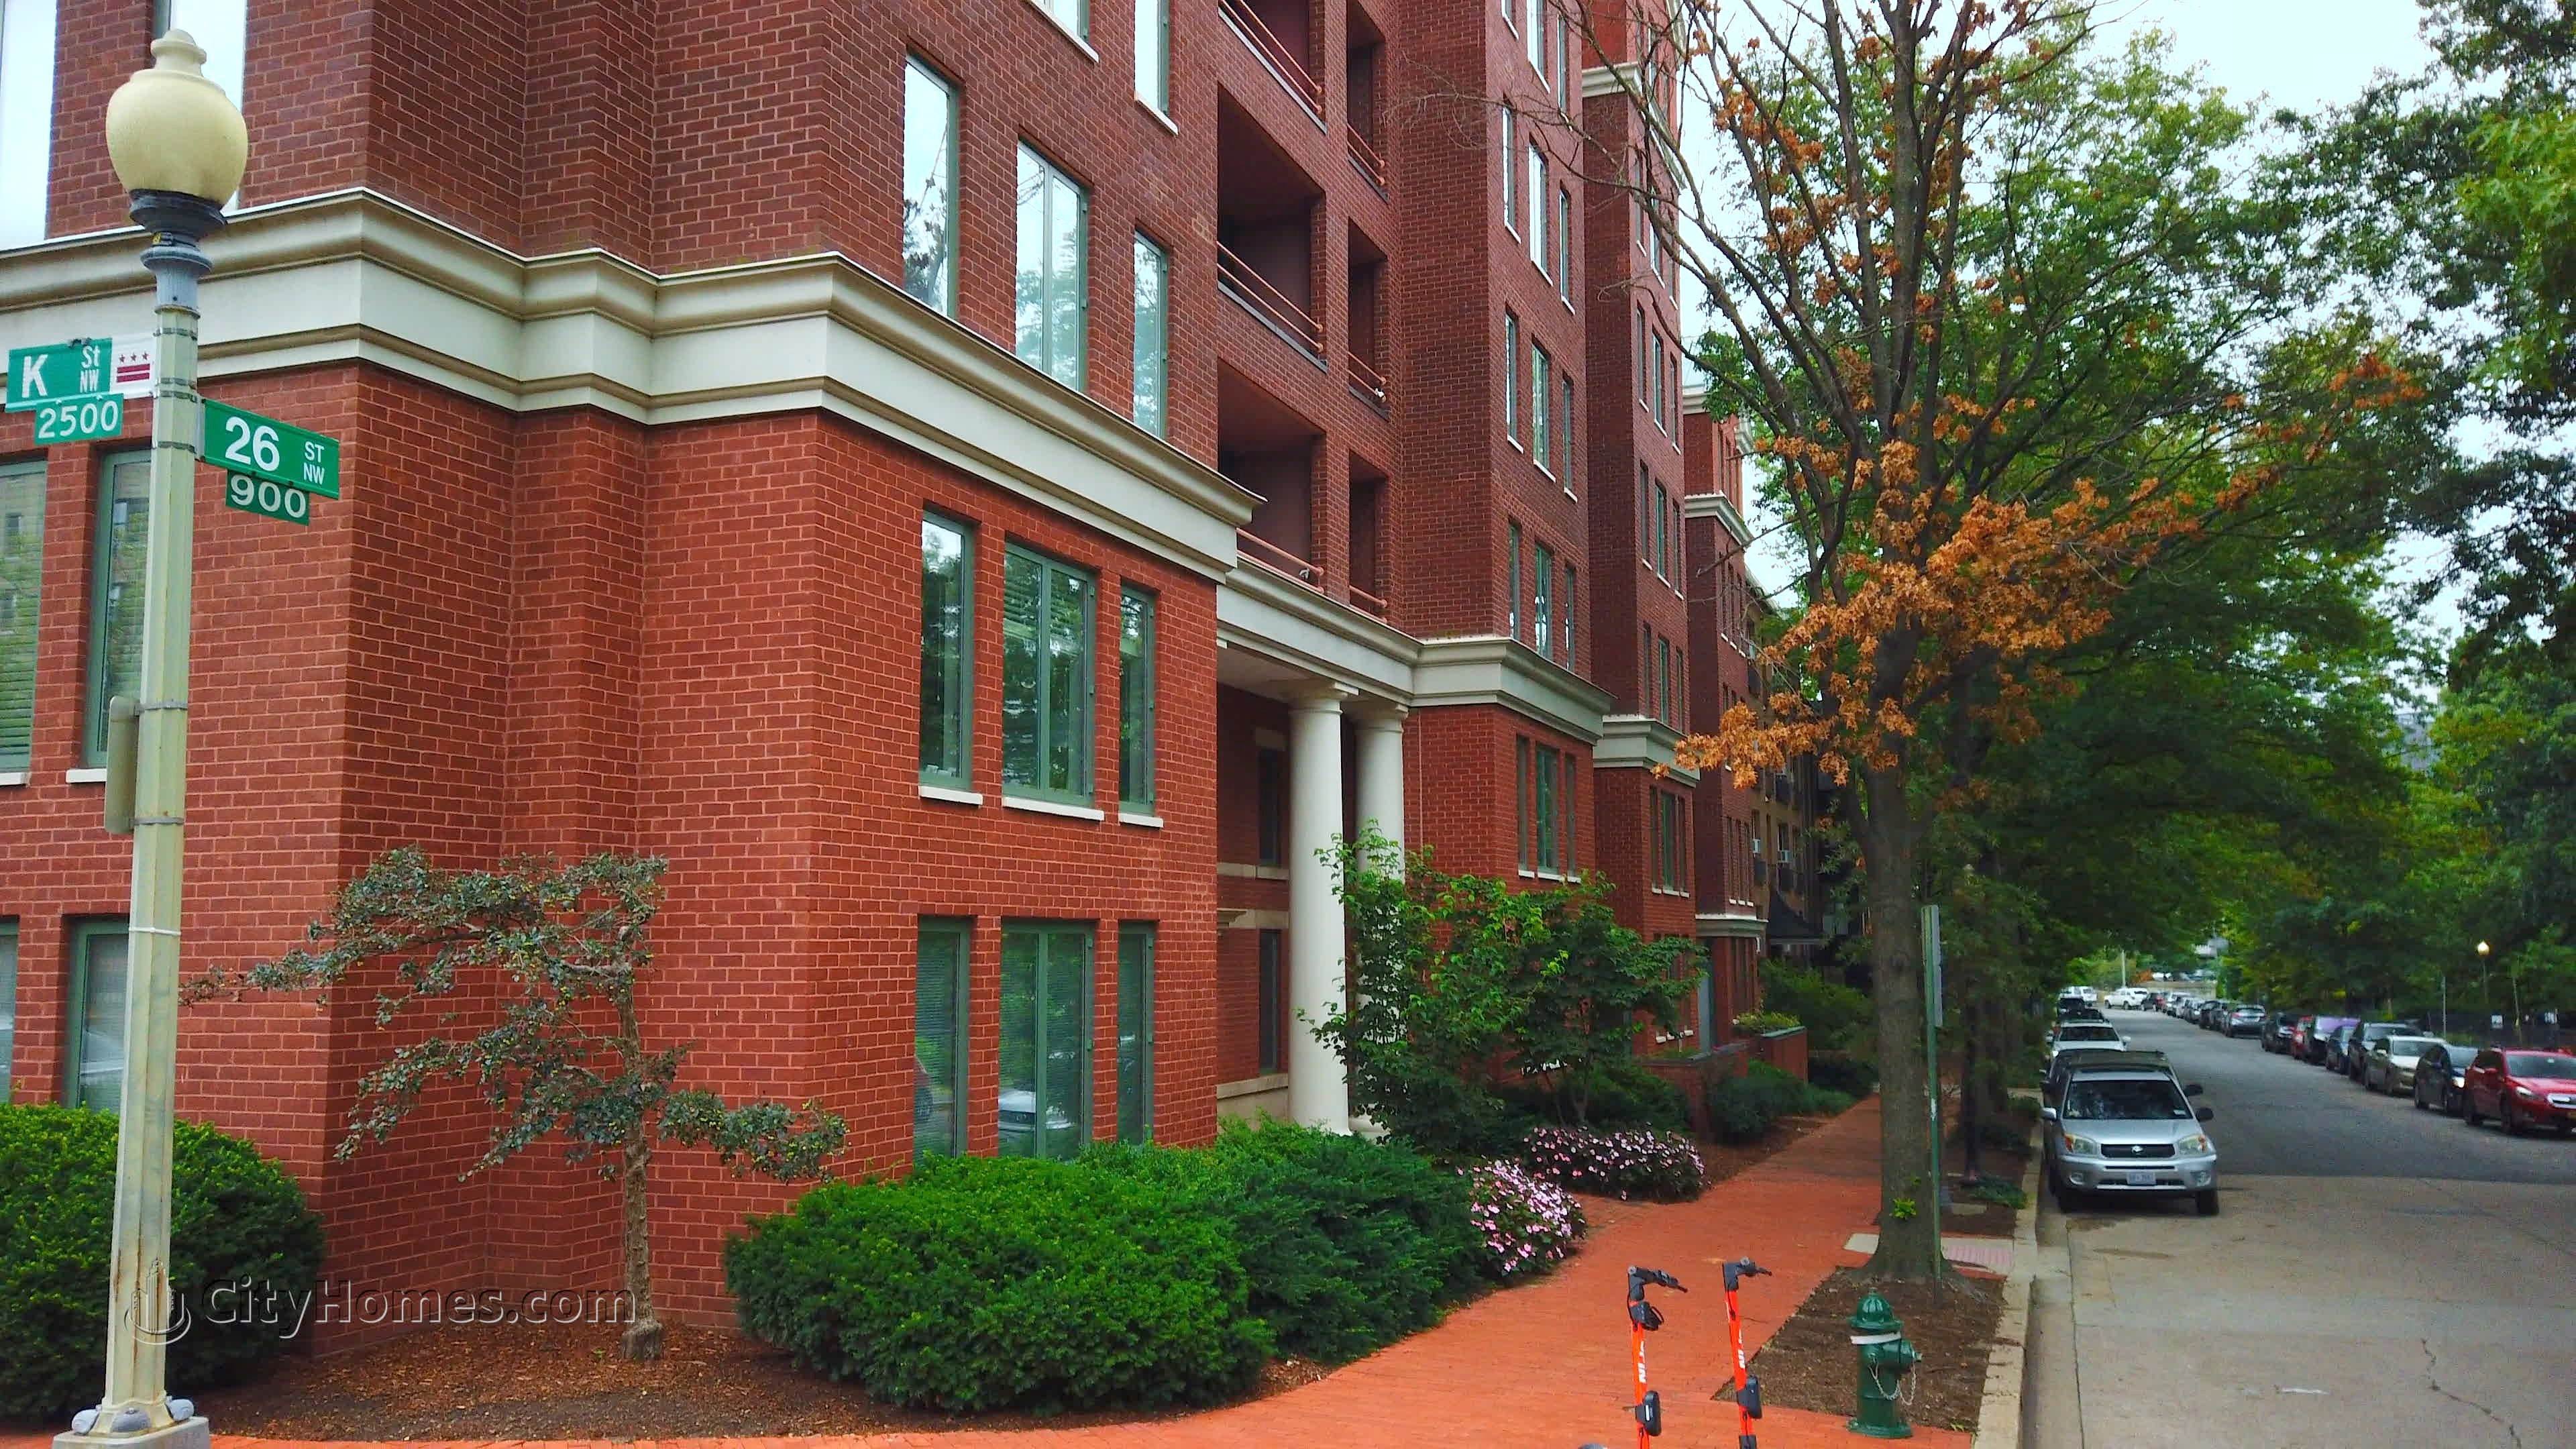 6. The Griffin prédio em 955 26th St NW, Foggy Bottom, Washington, DC 20037